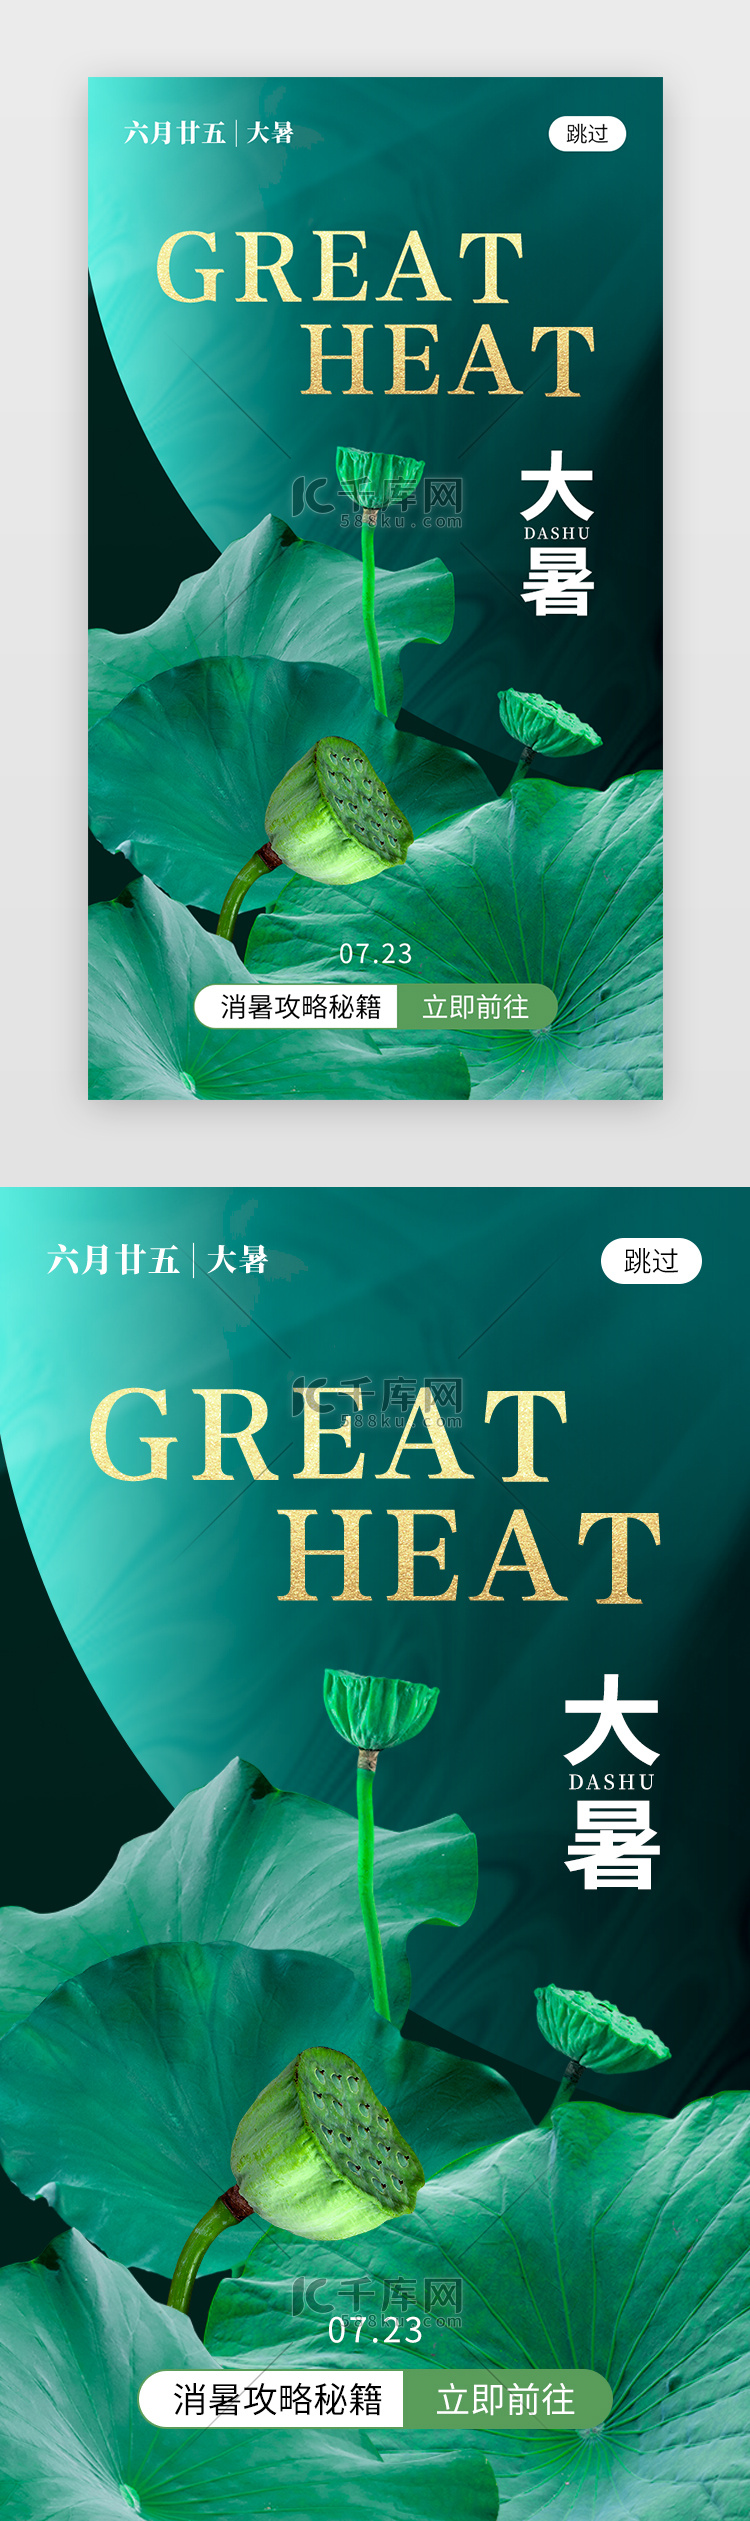 二十四节气大暑app闪屏创意绿色荷叶莲蓬